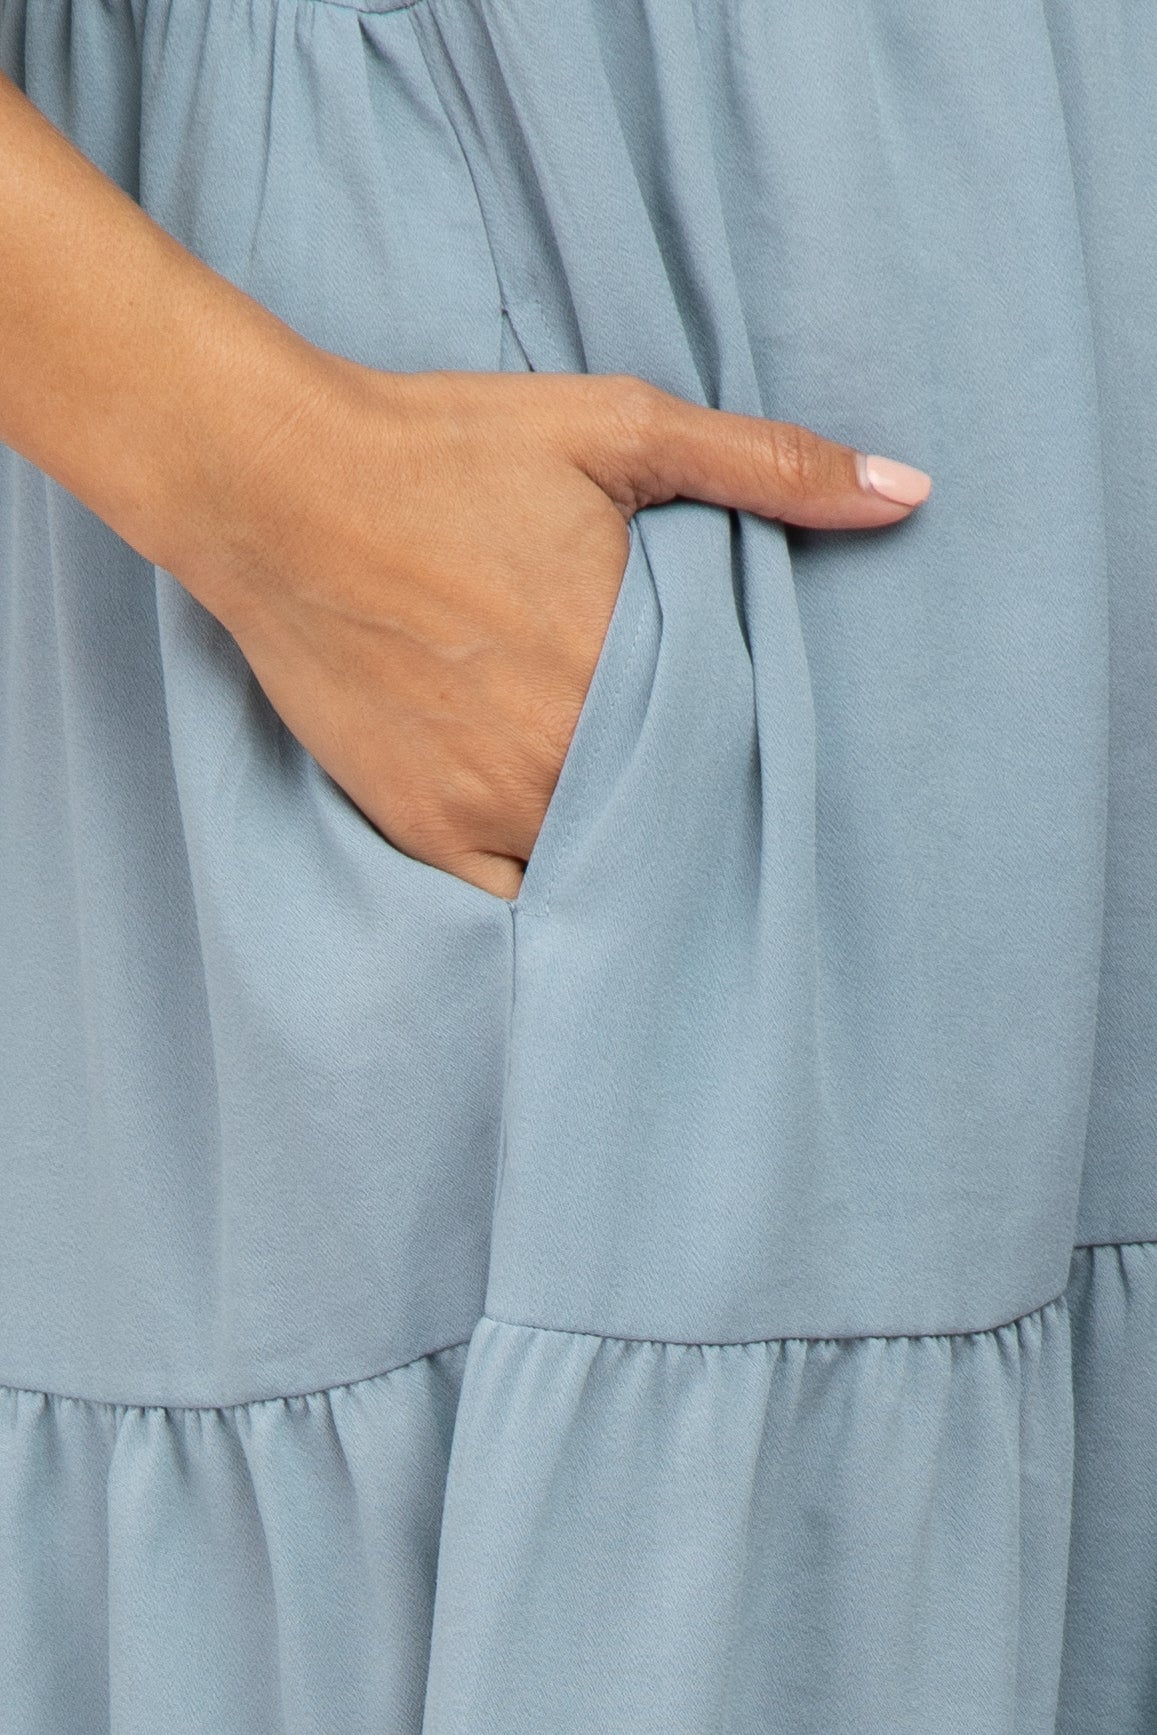 Blue Tiered Ruffle Sleeve Maternity Midi Dress– PinkBlush